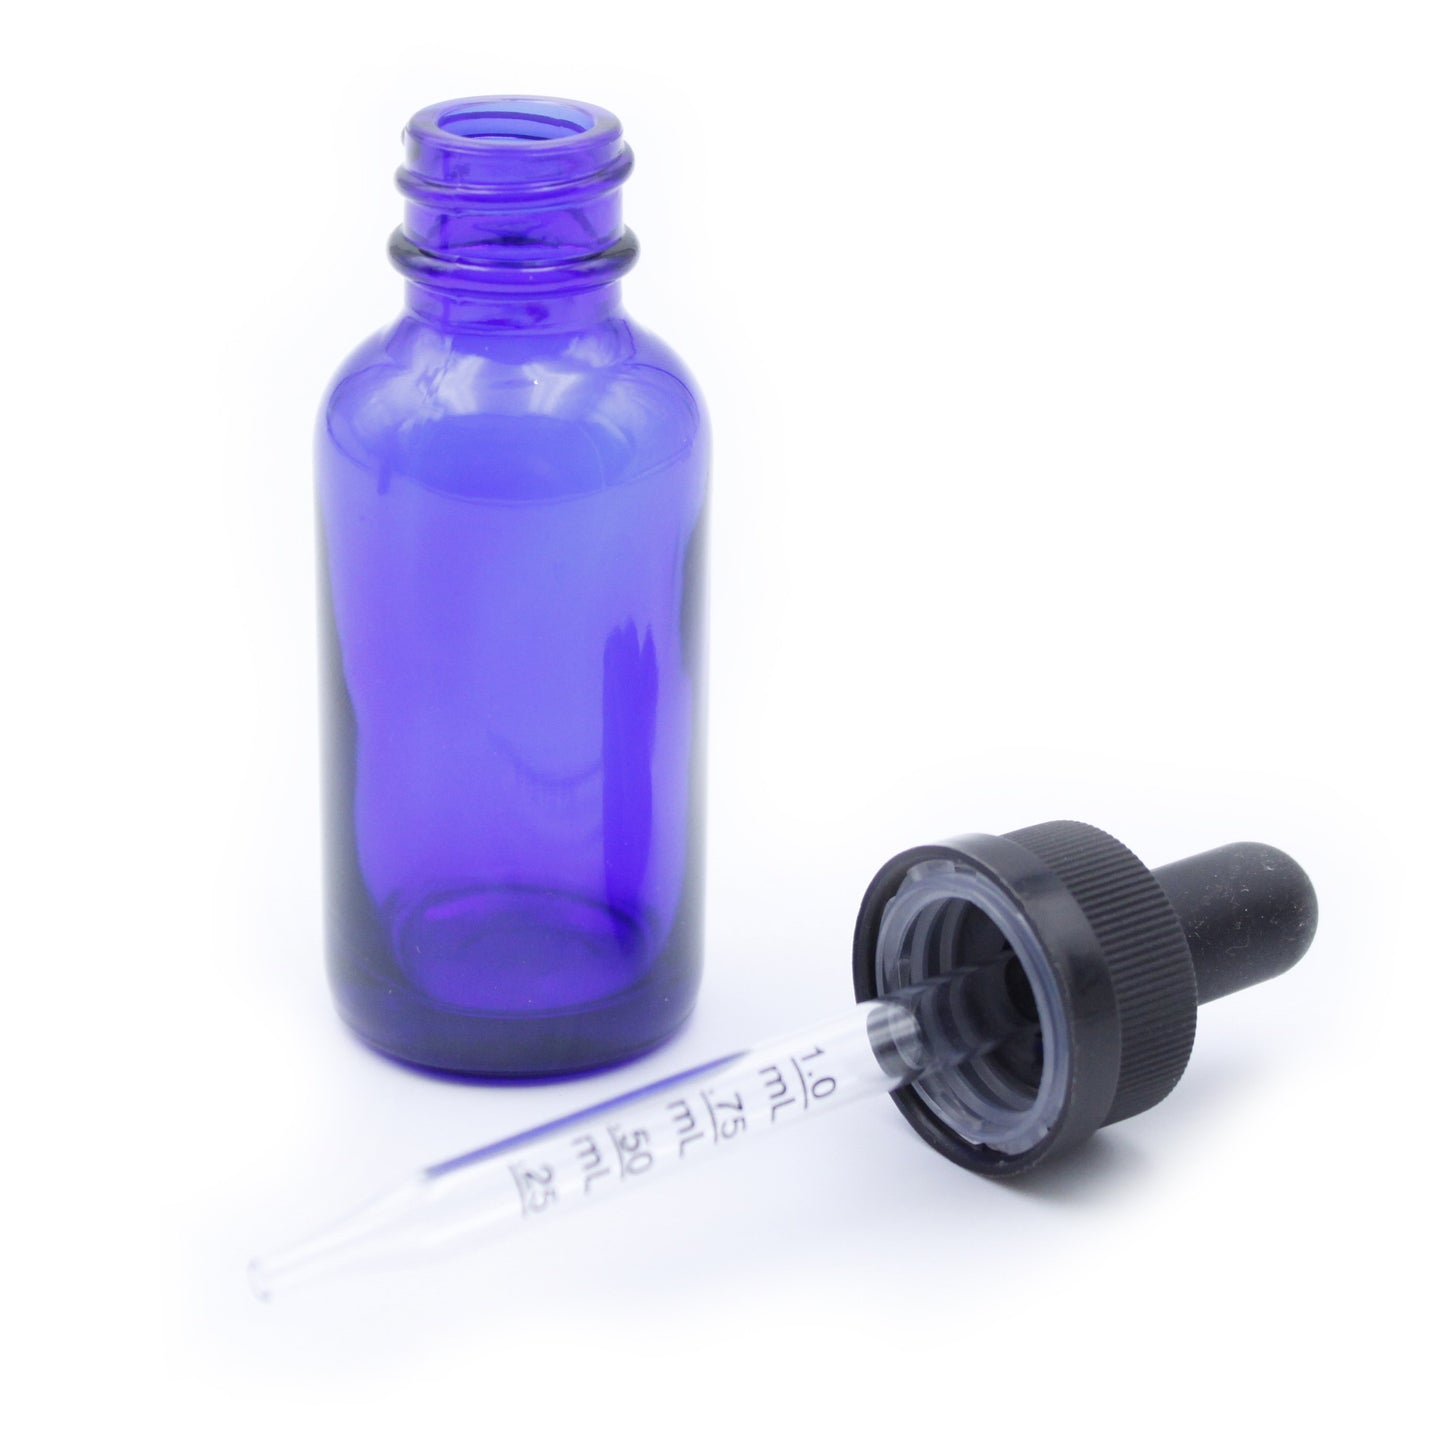 Cobalt Blue Child-Resistant Glass Dropper Bottle w/ 1.0ml Graduated Dropper - 1 oz